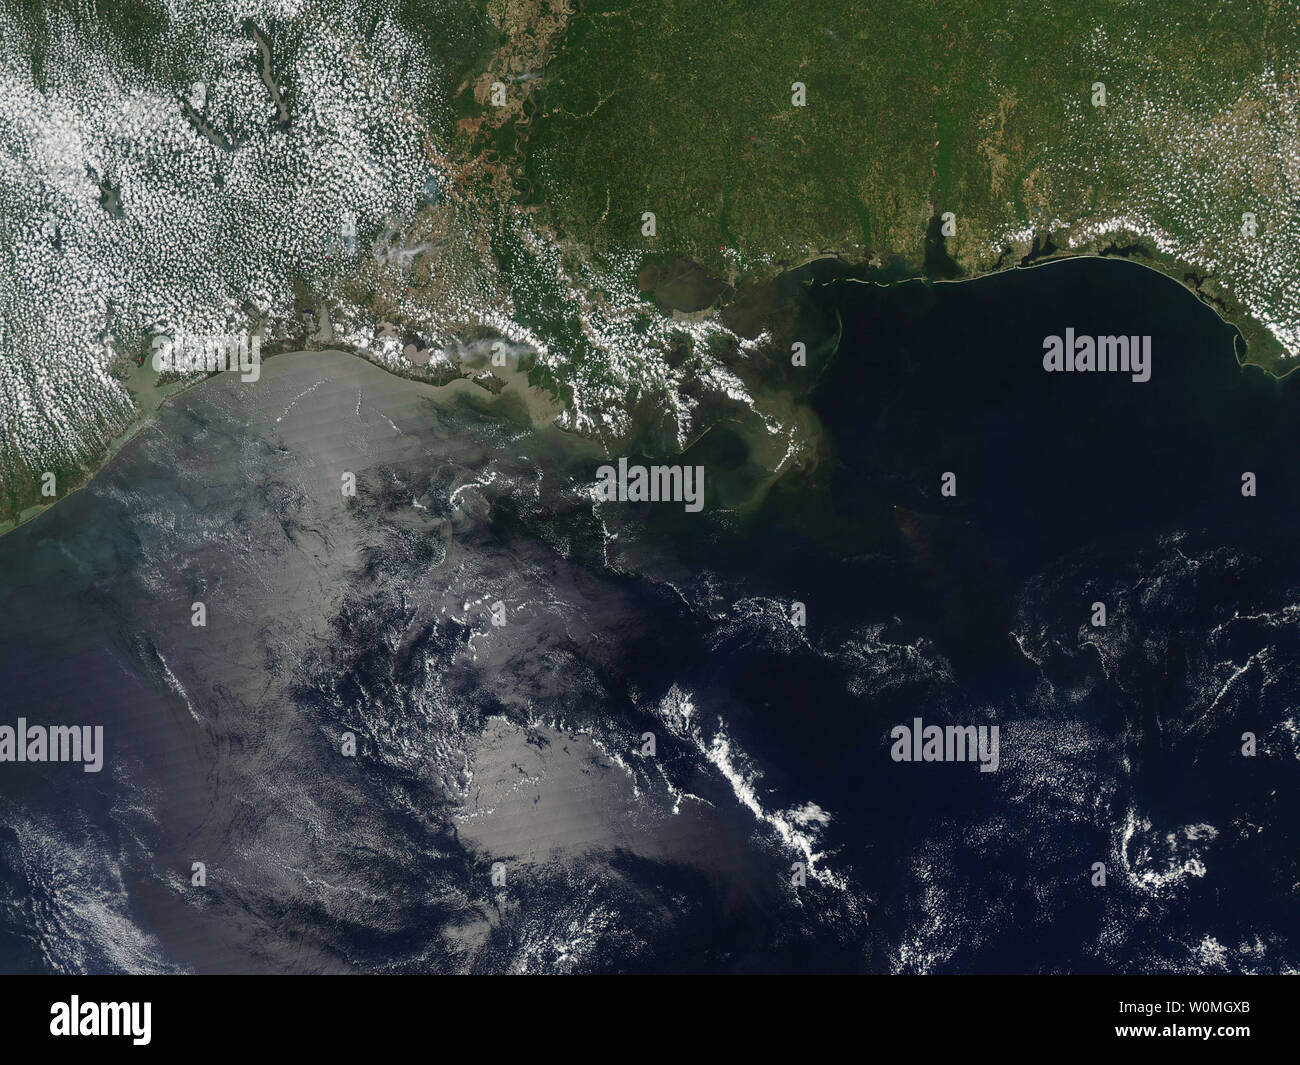 Eine NASA-Satellitenbild am 21. April 2010 berücksichtigt, zeigt den Golf von Mexiko einen Tag nach der Explosion der Bohrinsel "Deepwater Horizon". Die Plattform wird als weißer Punkt, und ein Fan von braunen Rauch erstreckt sich im Südosten. UPI/NASA/MODIS Rapid Response Stockfoto